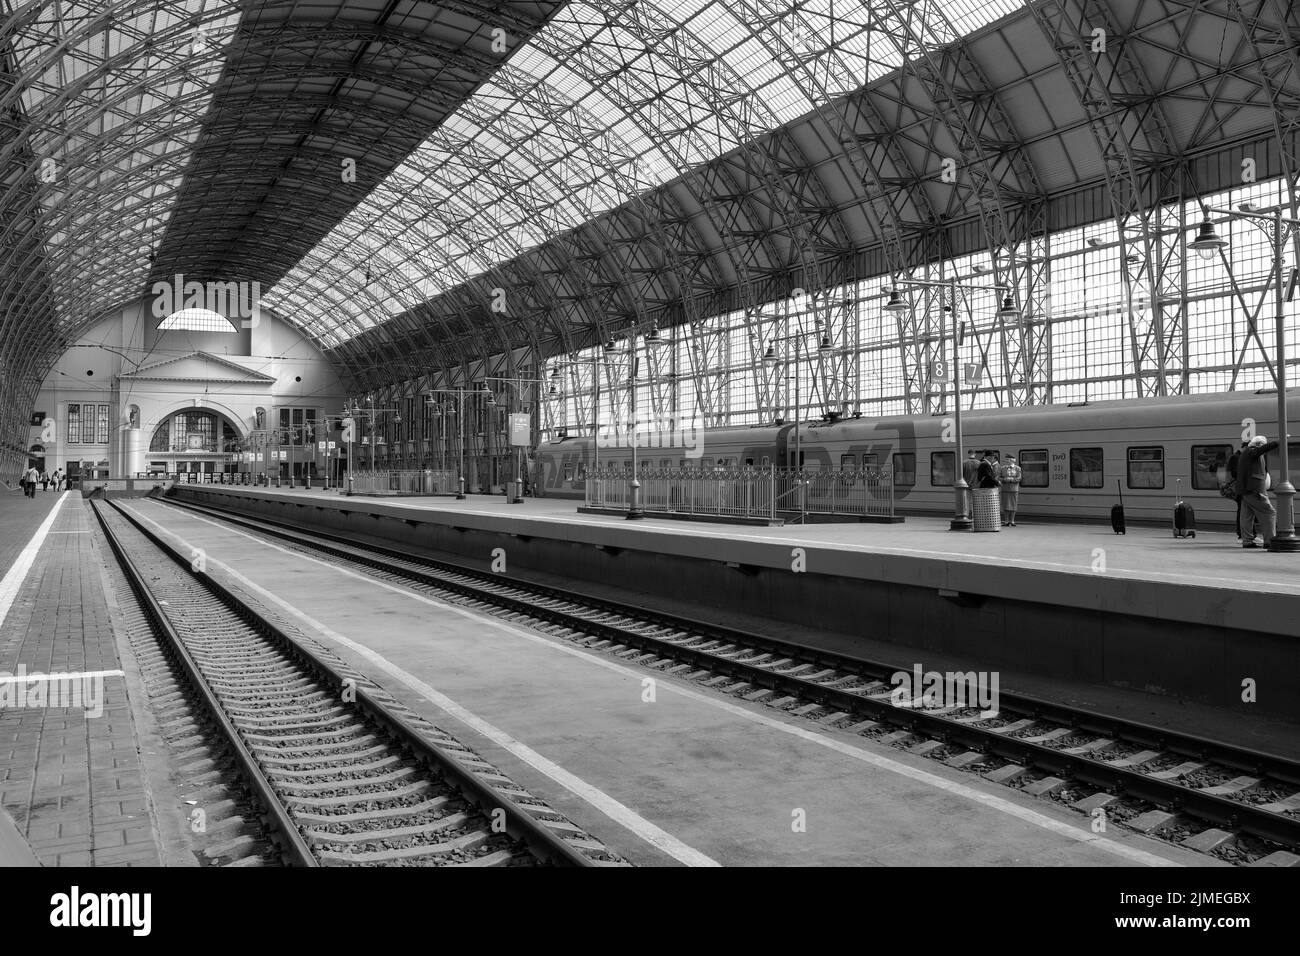 Los arcos abovedados de la estación de tren que sostiene un gran techo de cristal. Foto de stock